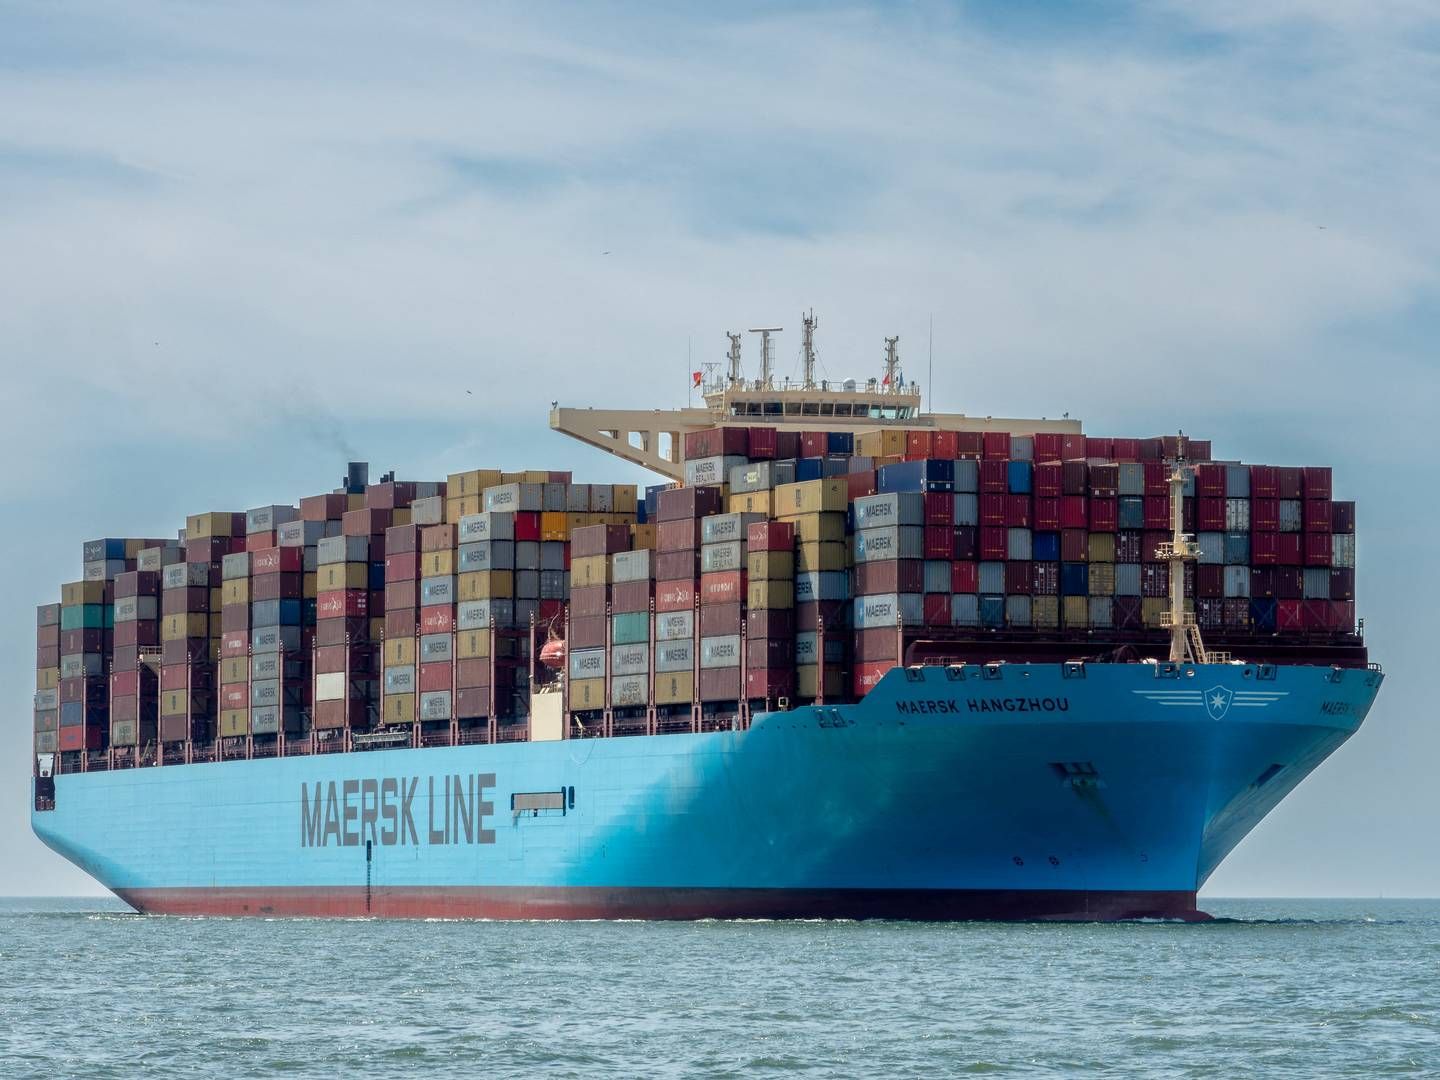 ”Denne beslutning er truffet for at garantere sikkerheden for vores søfolk og din last på vores skibe, hvilket er vores højeste prioritet,” lyder det. | Foto: Rene Van Quekelberghe/Reuters/Ritzau Scanpix